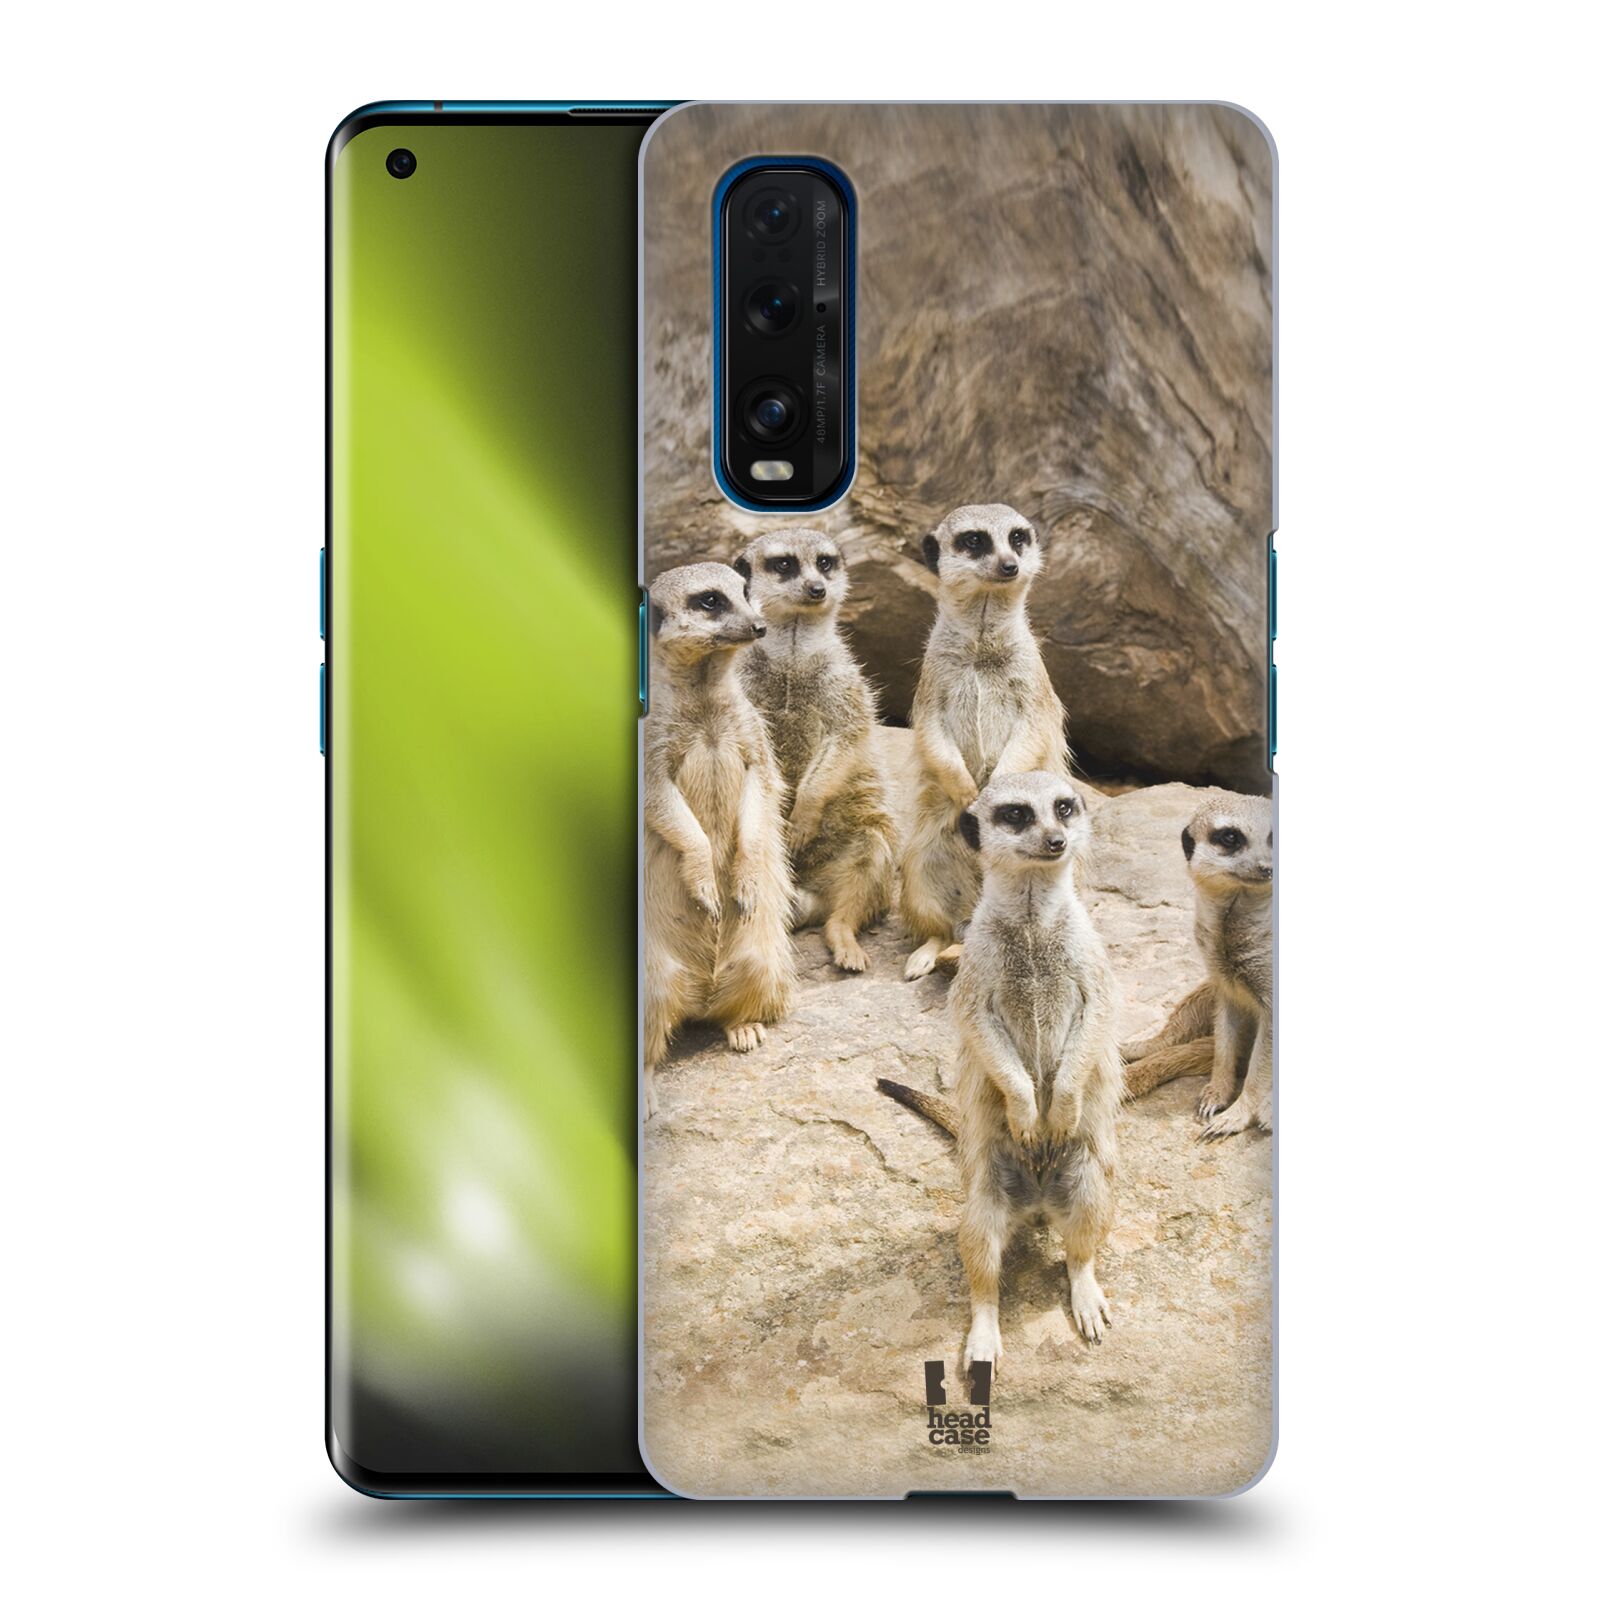 Zadní obal pro mobil Oppo Find X2 - HEAD CASE - Svět zvířat roztomilé surikaty